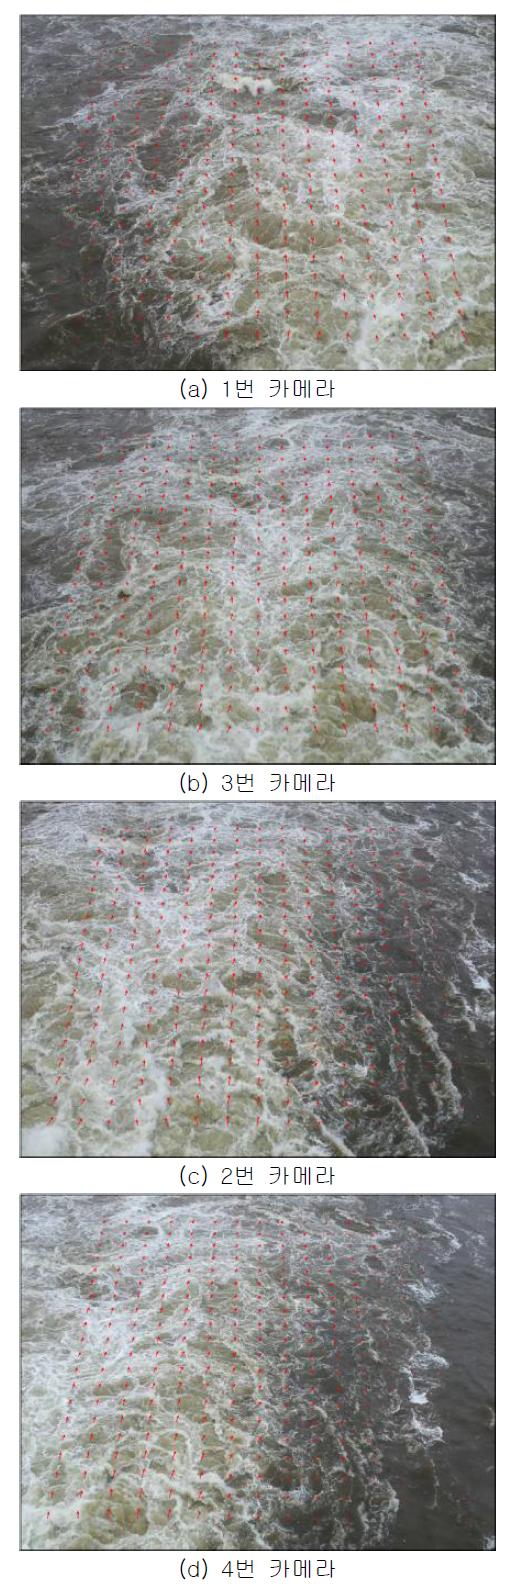 2번 수문 하류 40~59 m 지점의 표면 유속 측정 결과 (2013.4.2. PM 16:11)